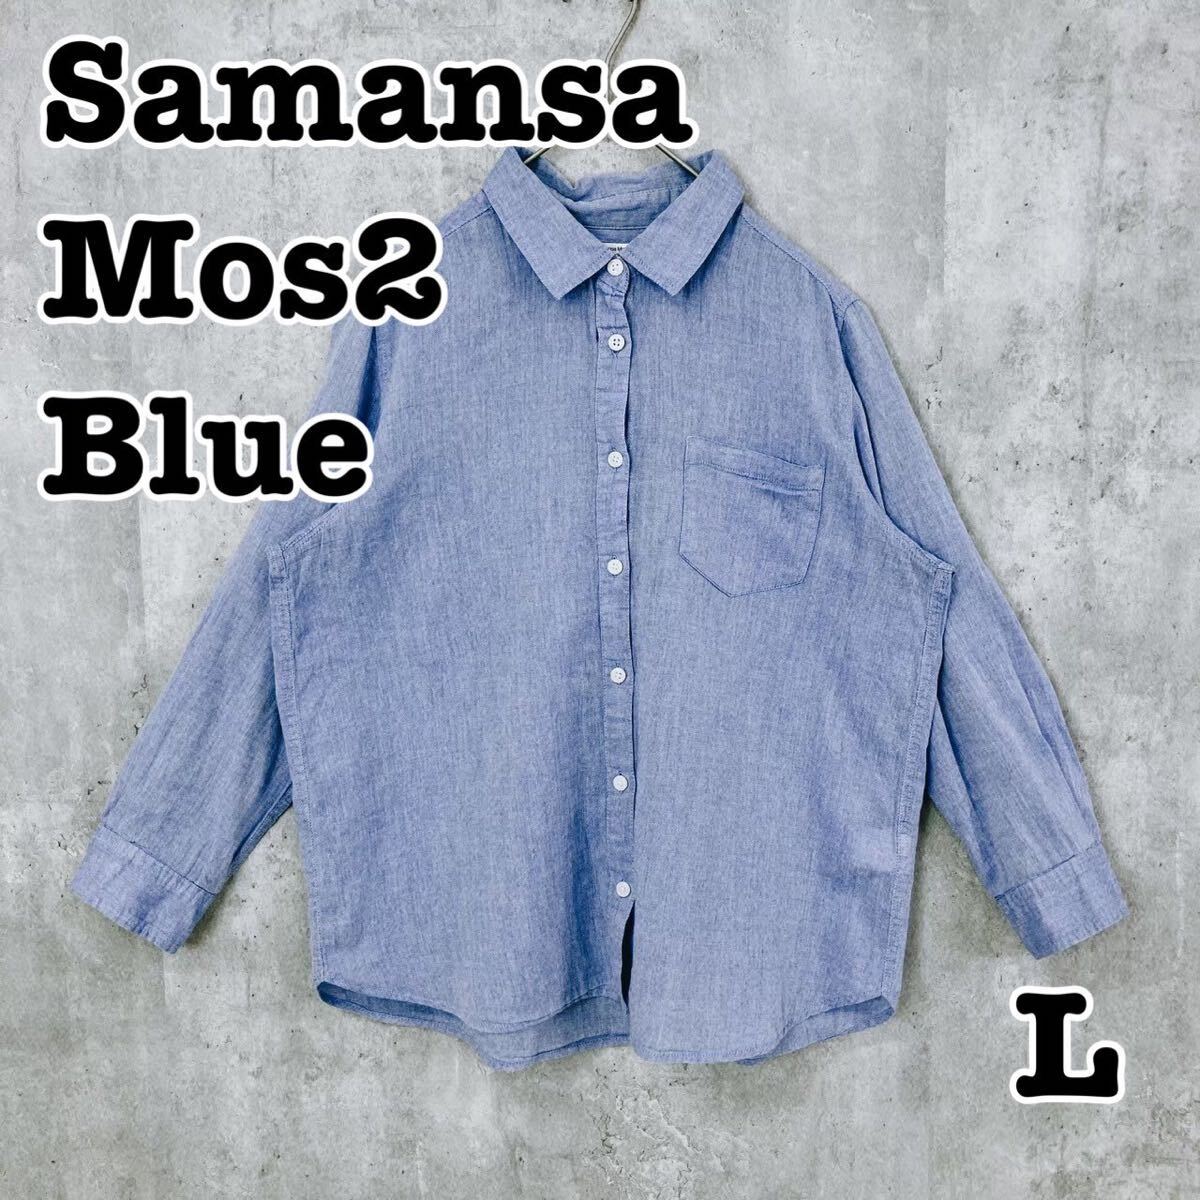 Samansa Mos2 blue サマンサモスモスブルー ボタンシャツ 長袖 SM2 無地 L 送料無料_画像1